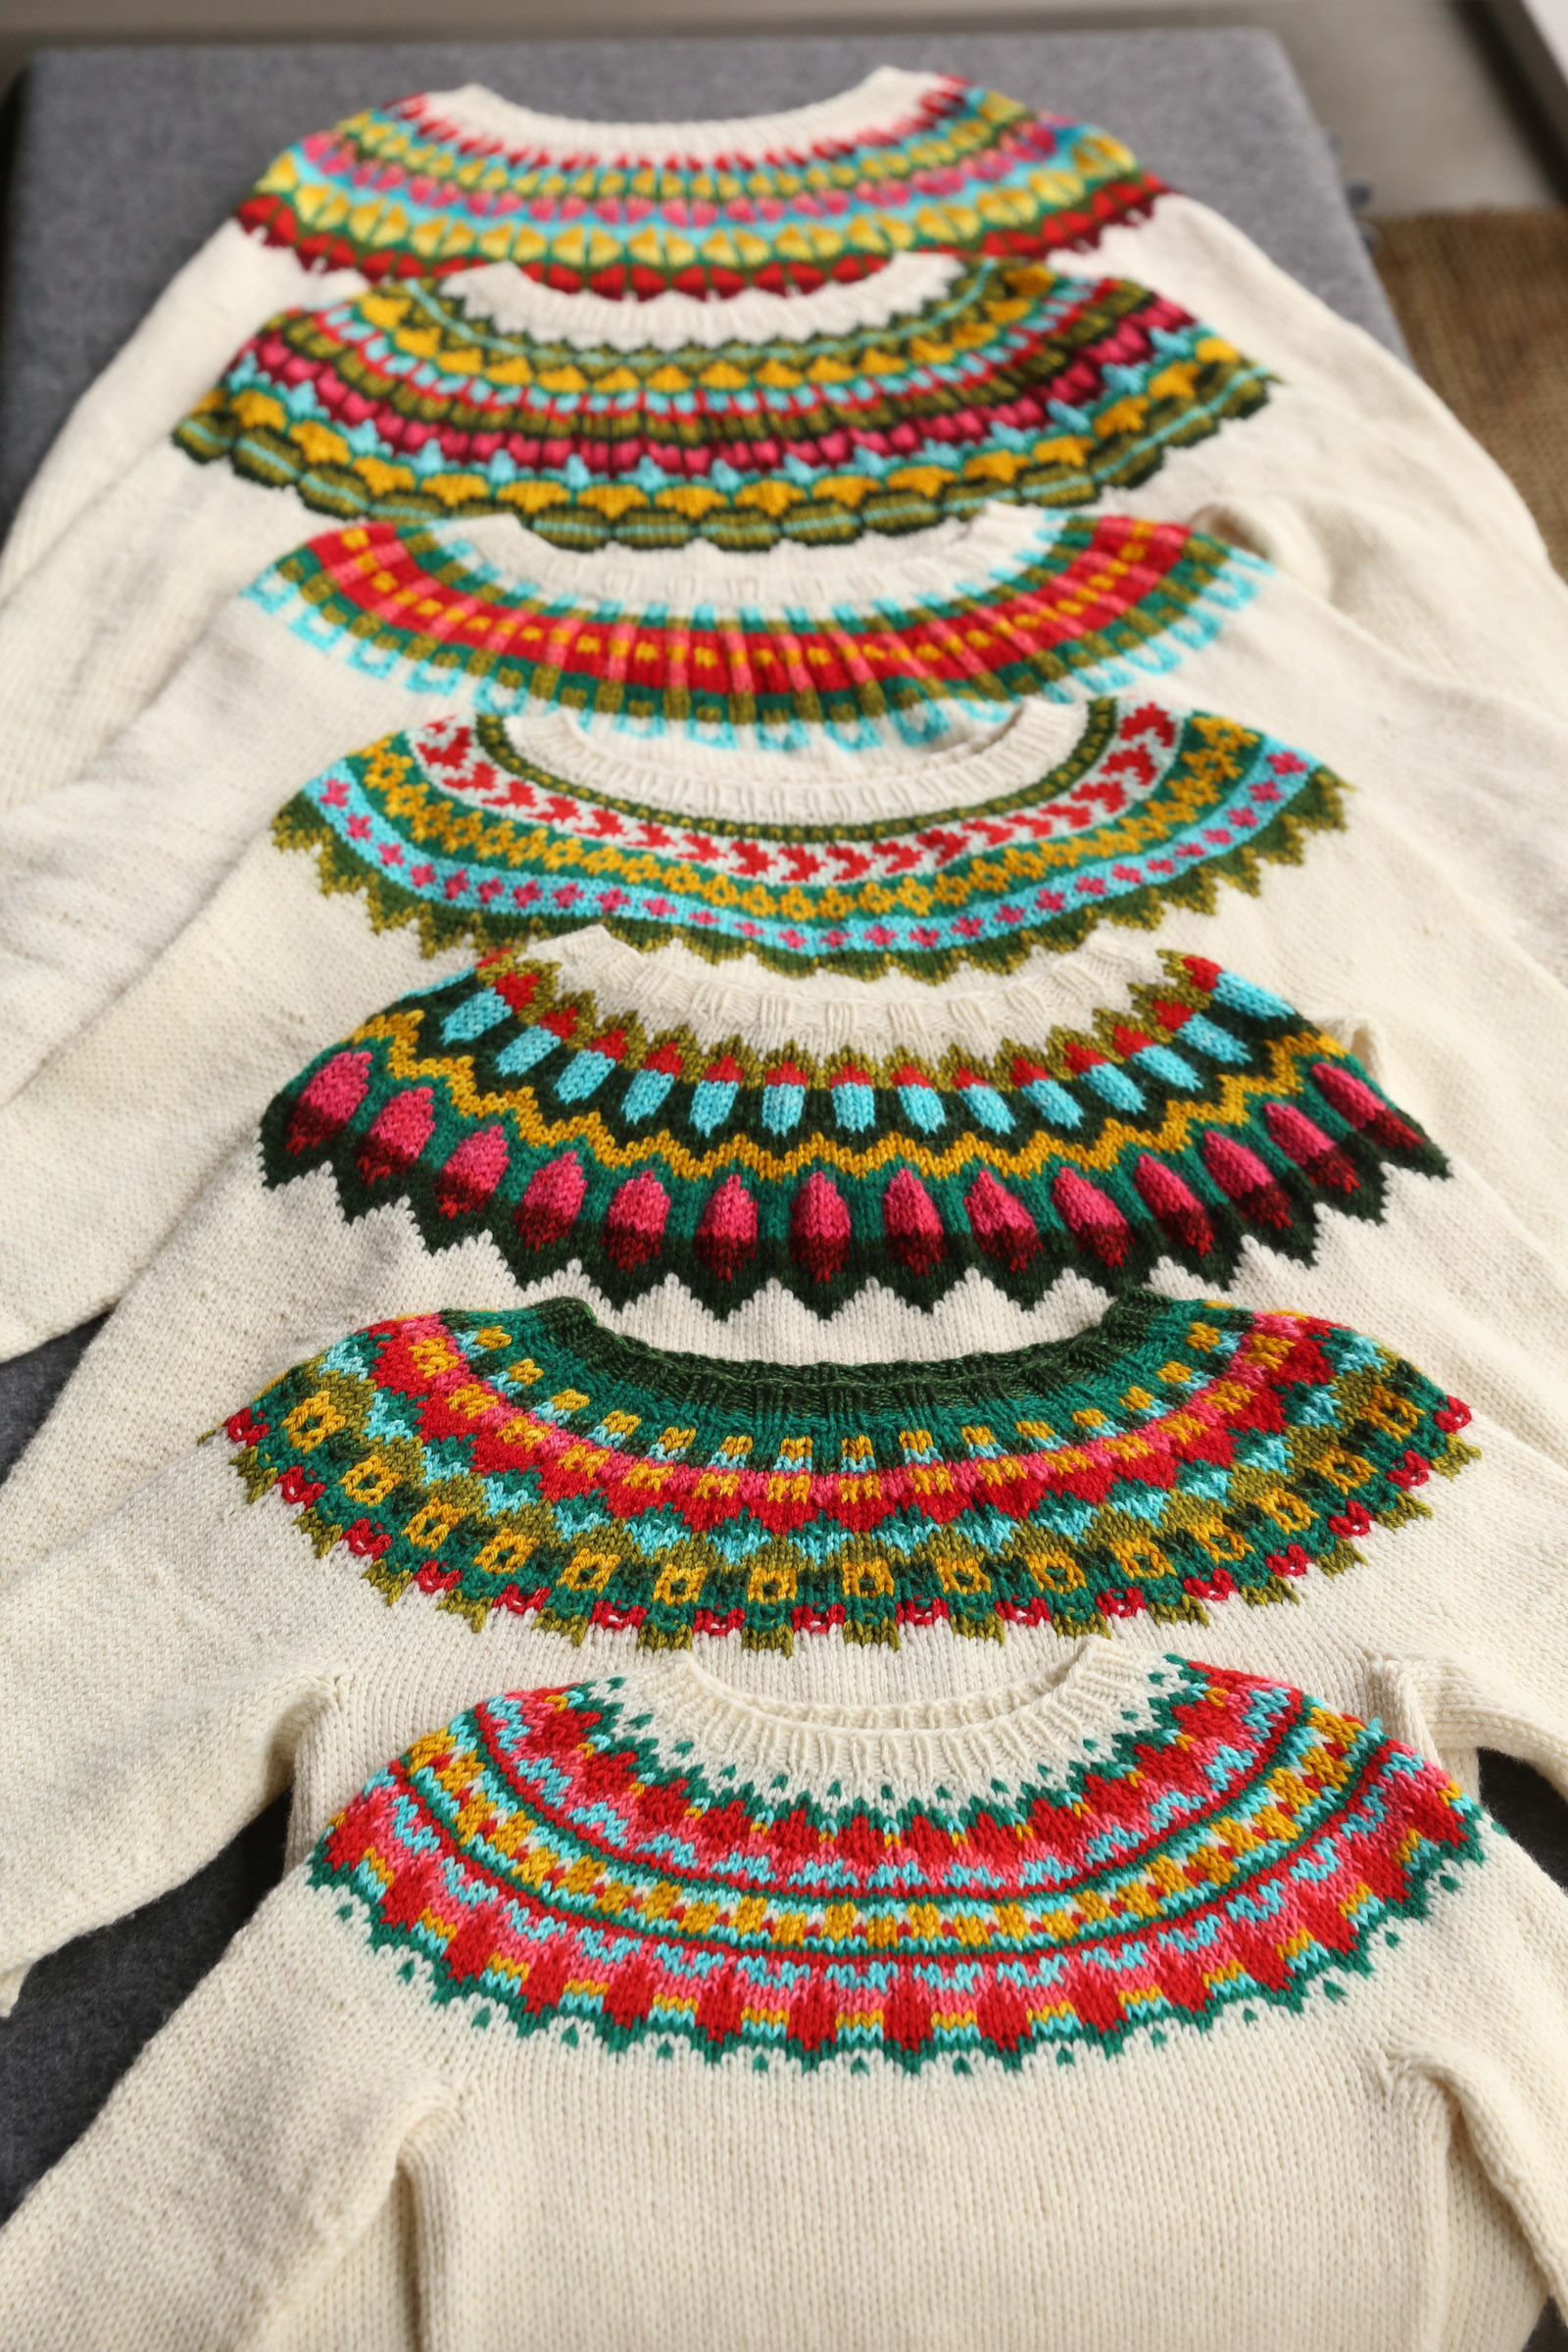 Seven matching yoke sweaters, laid flat.